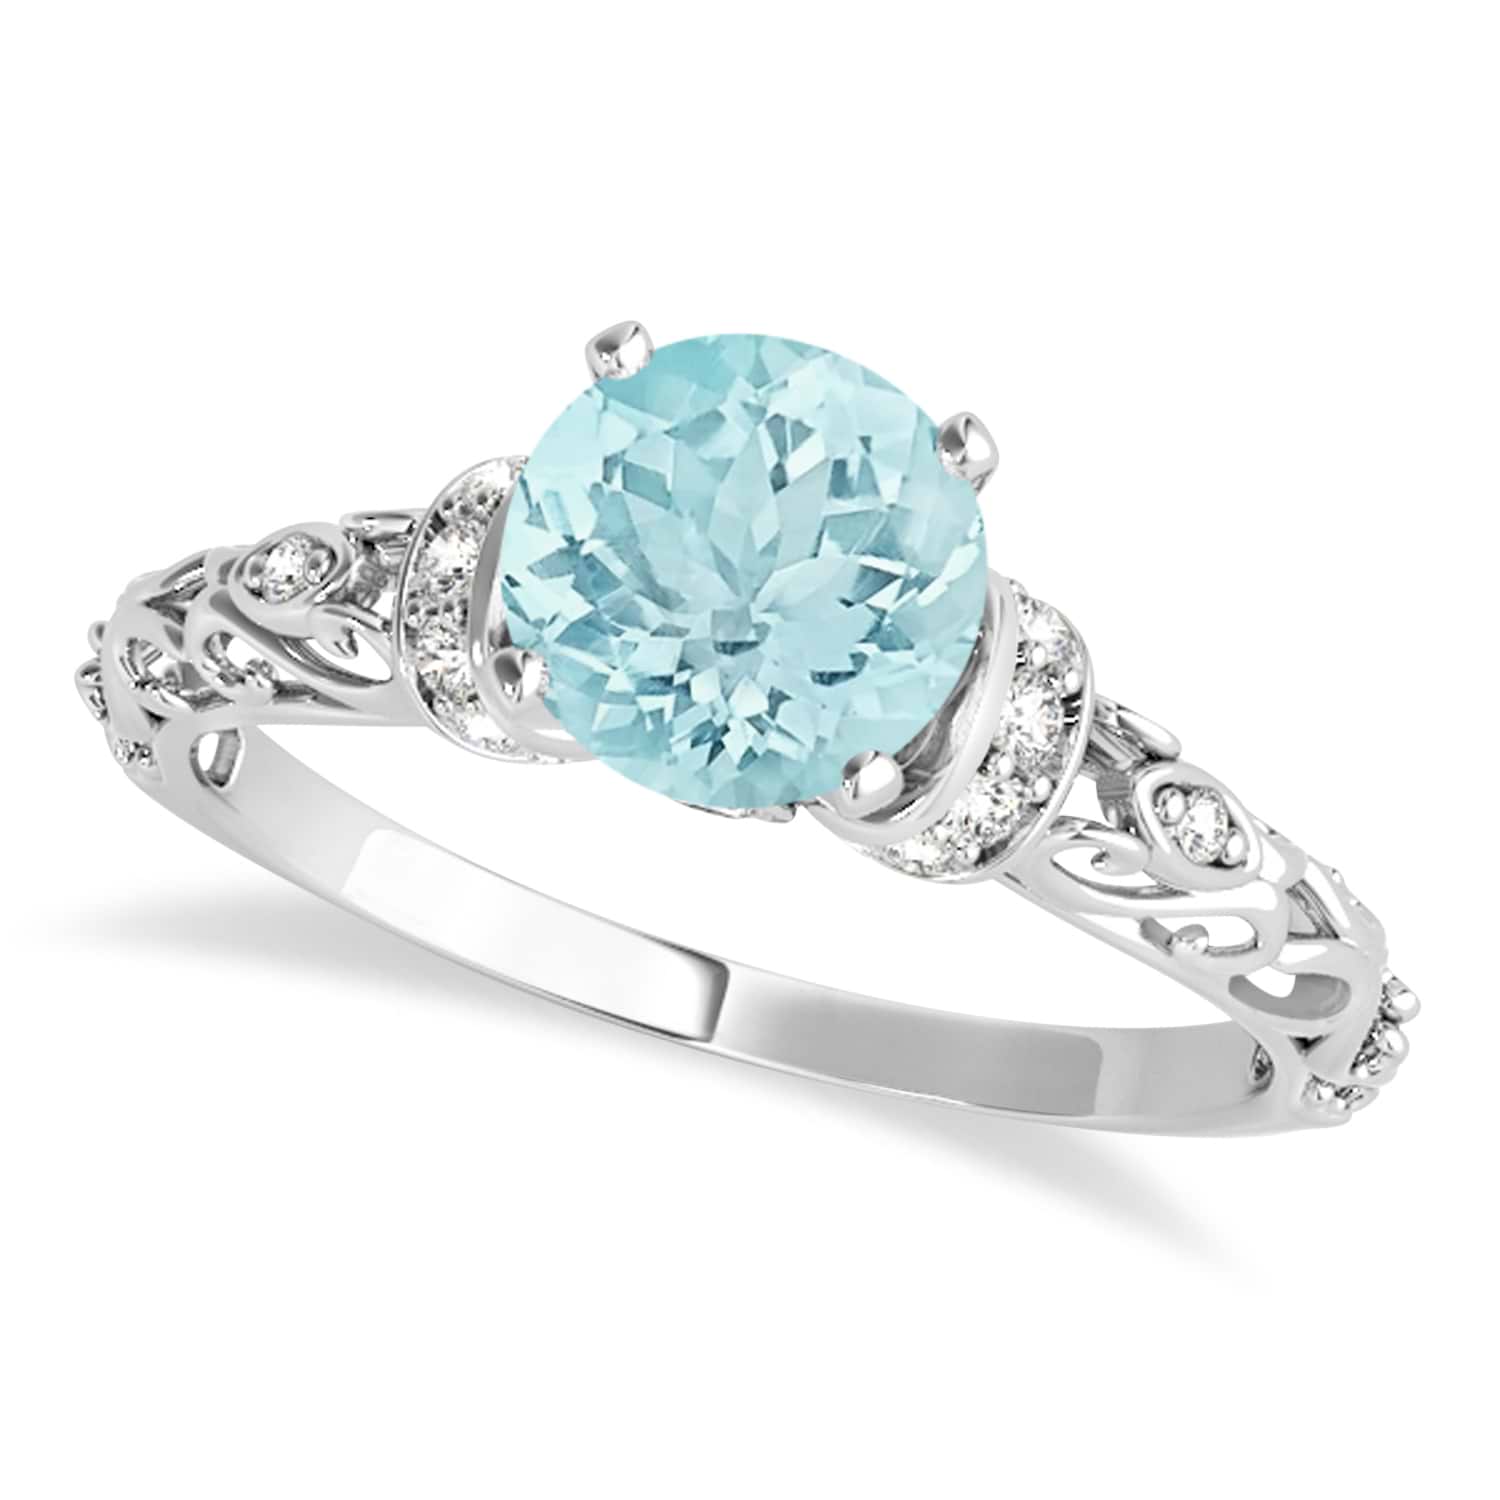 Aquamarine & Diamond Antique Style Engagement Ring 14k White Gold (1.12ct)